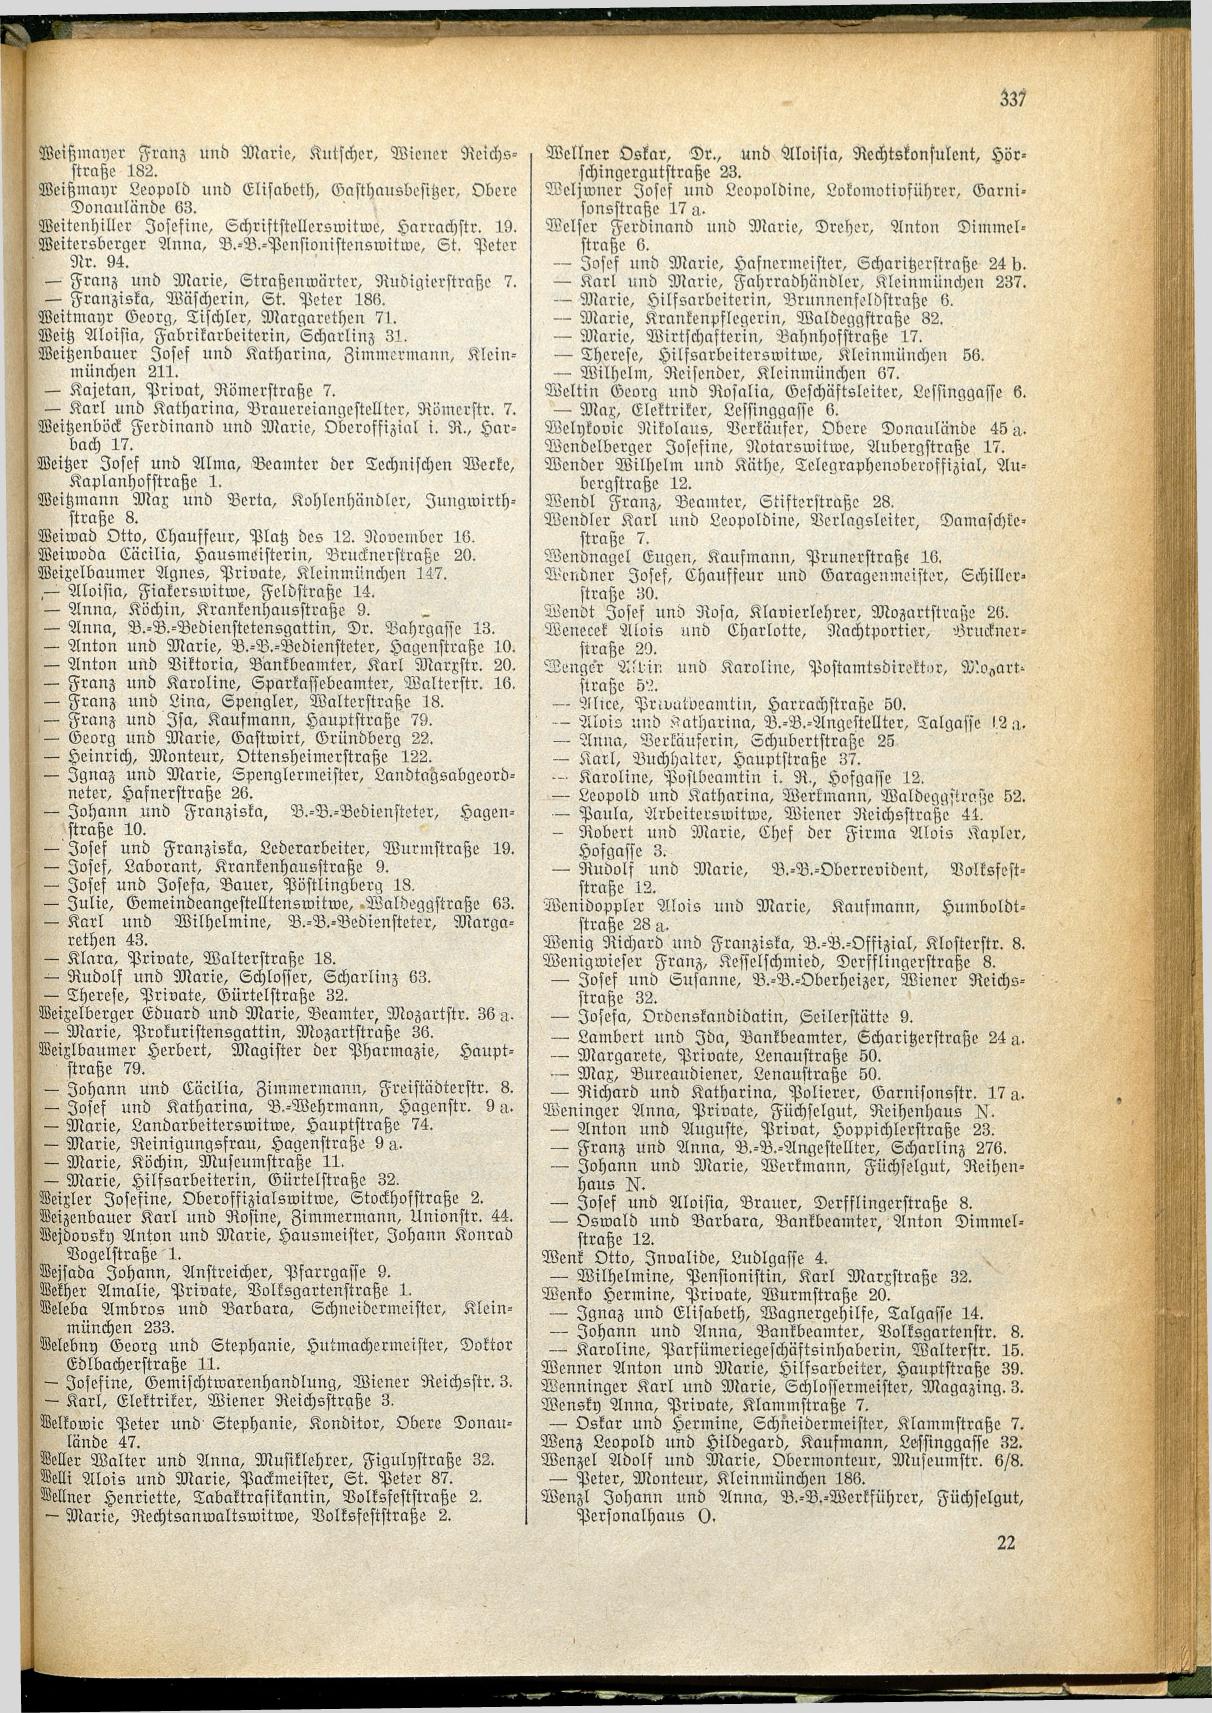 Amtliches Linzer Adreßbuch 1928 - Seite 339